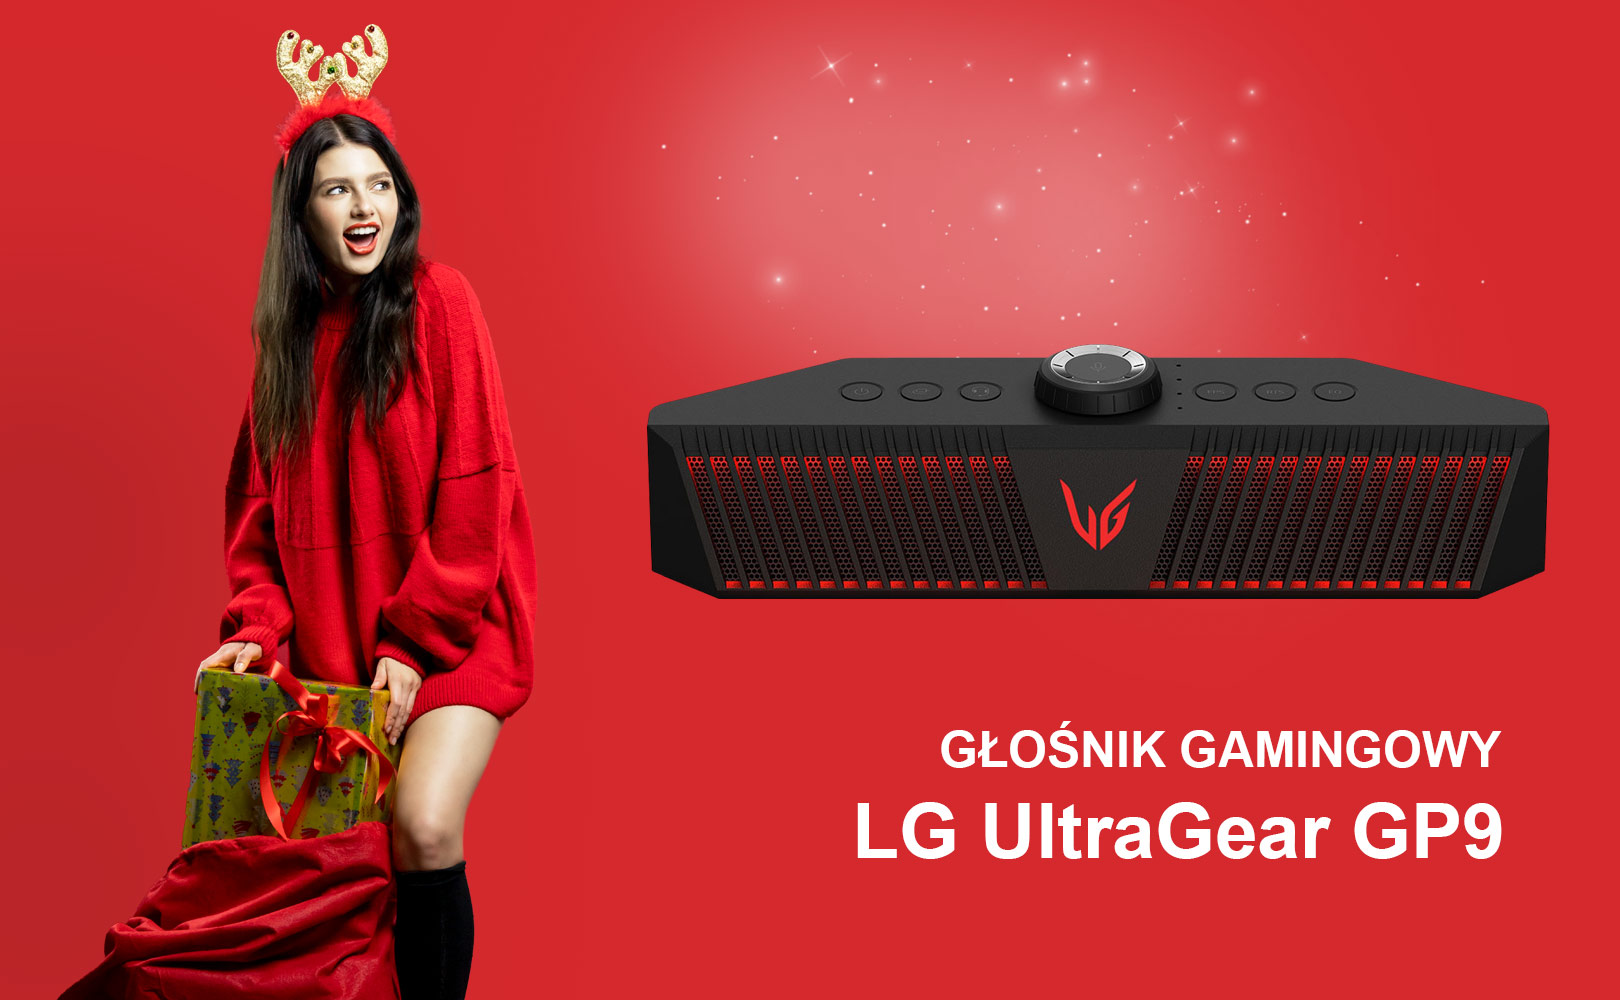 Konkurs - głośnik gamingowy LG UltraGear GP9